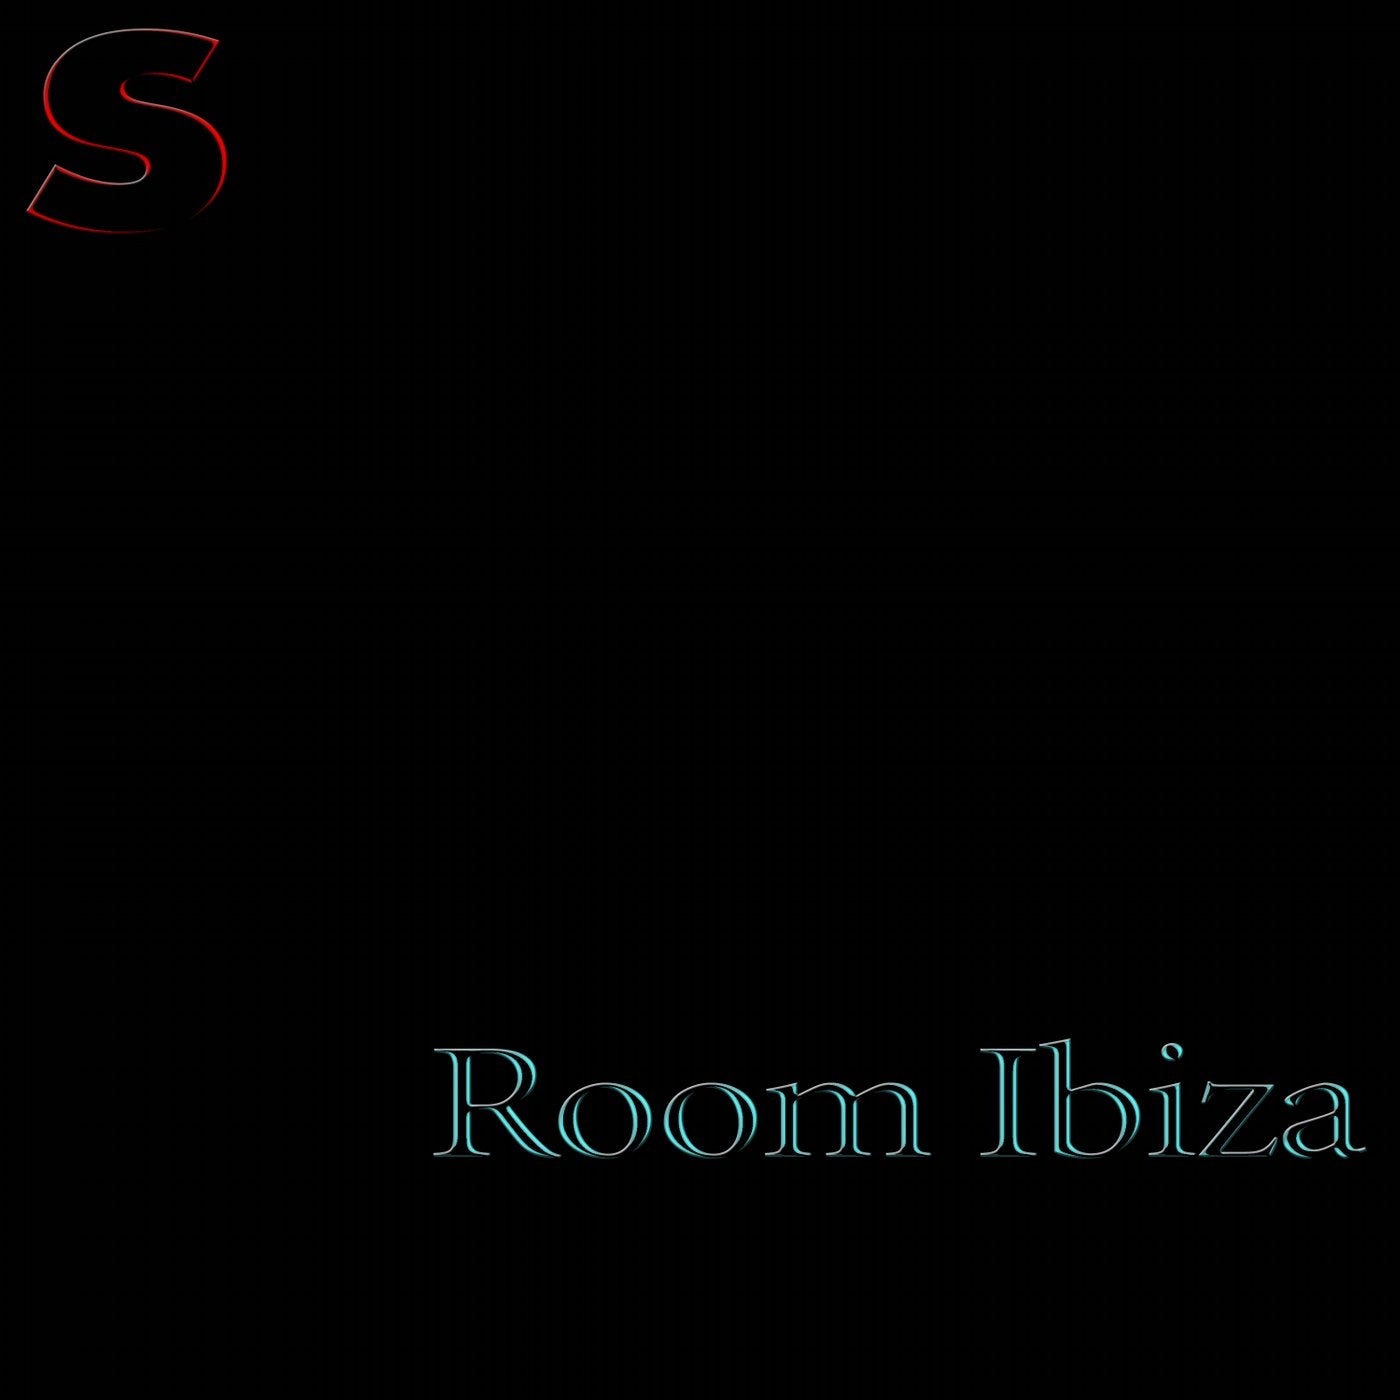 Room Ibiza